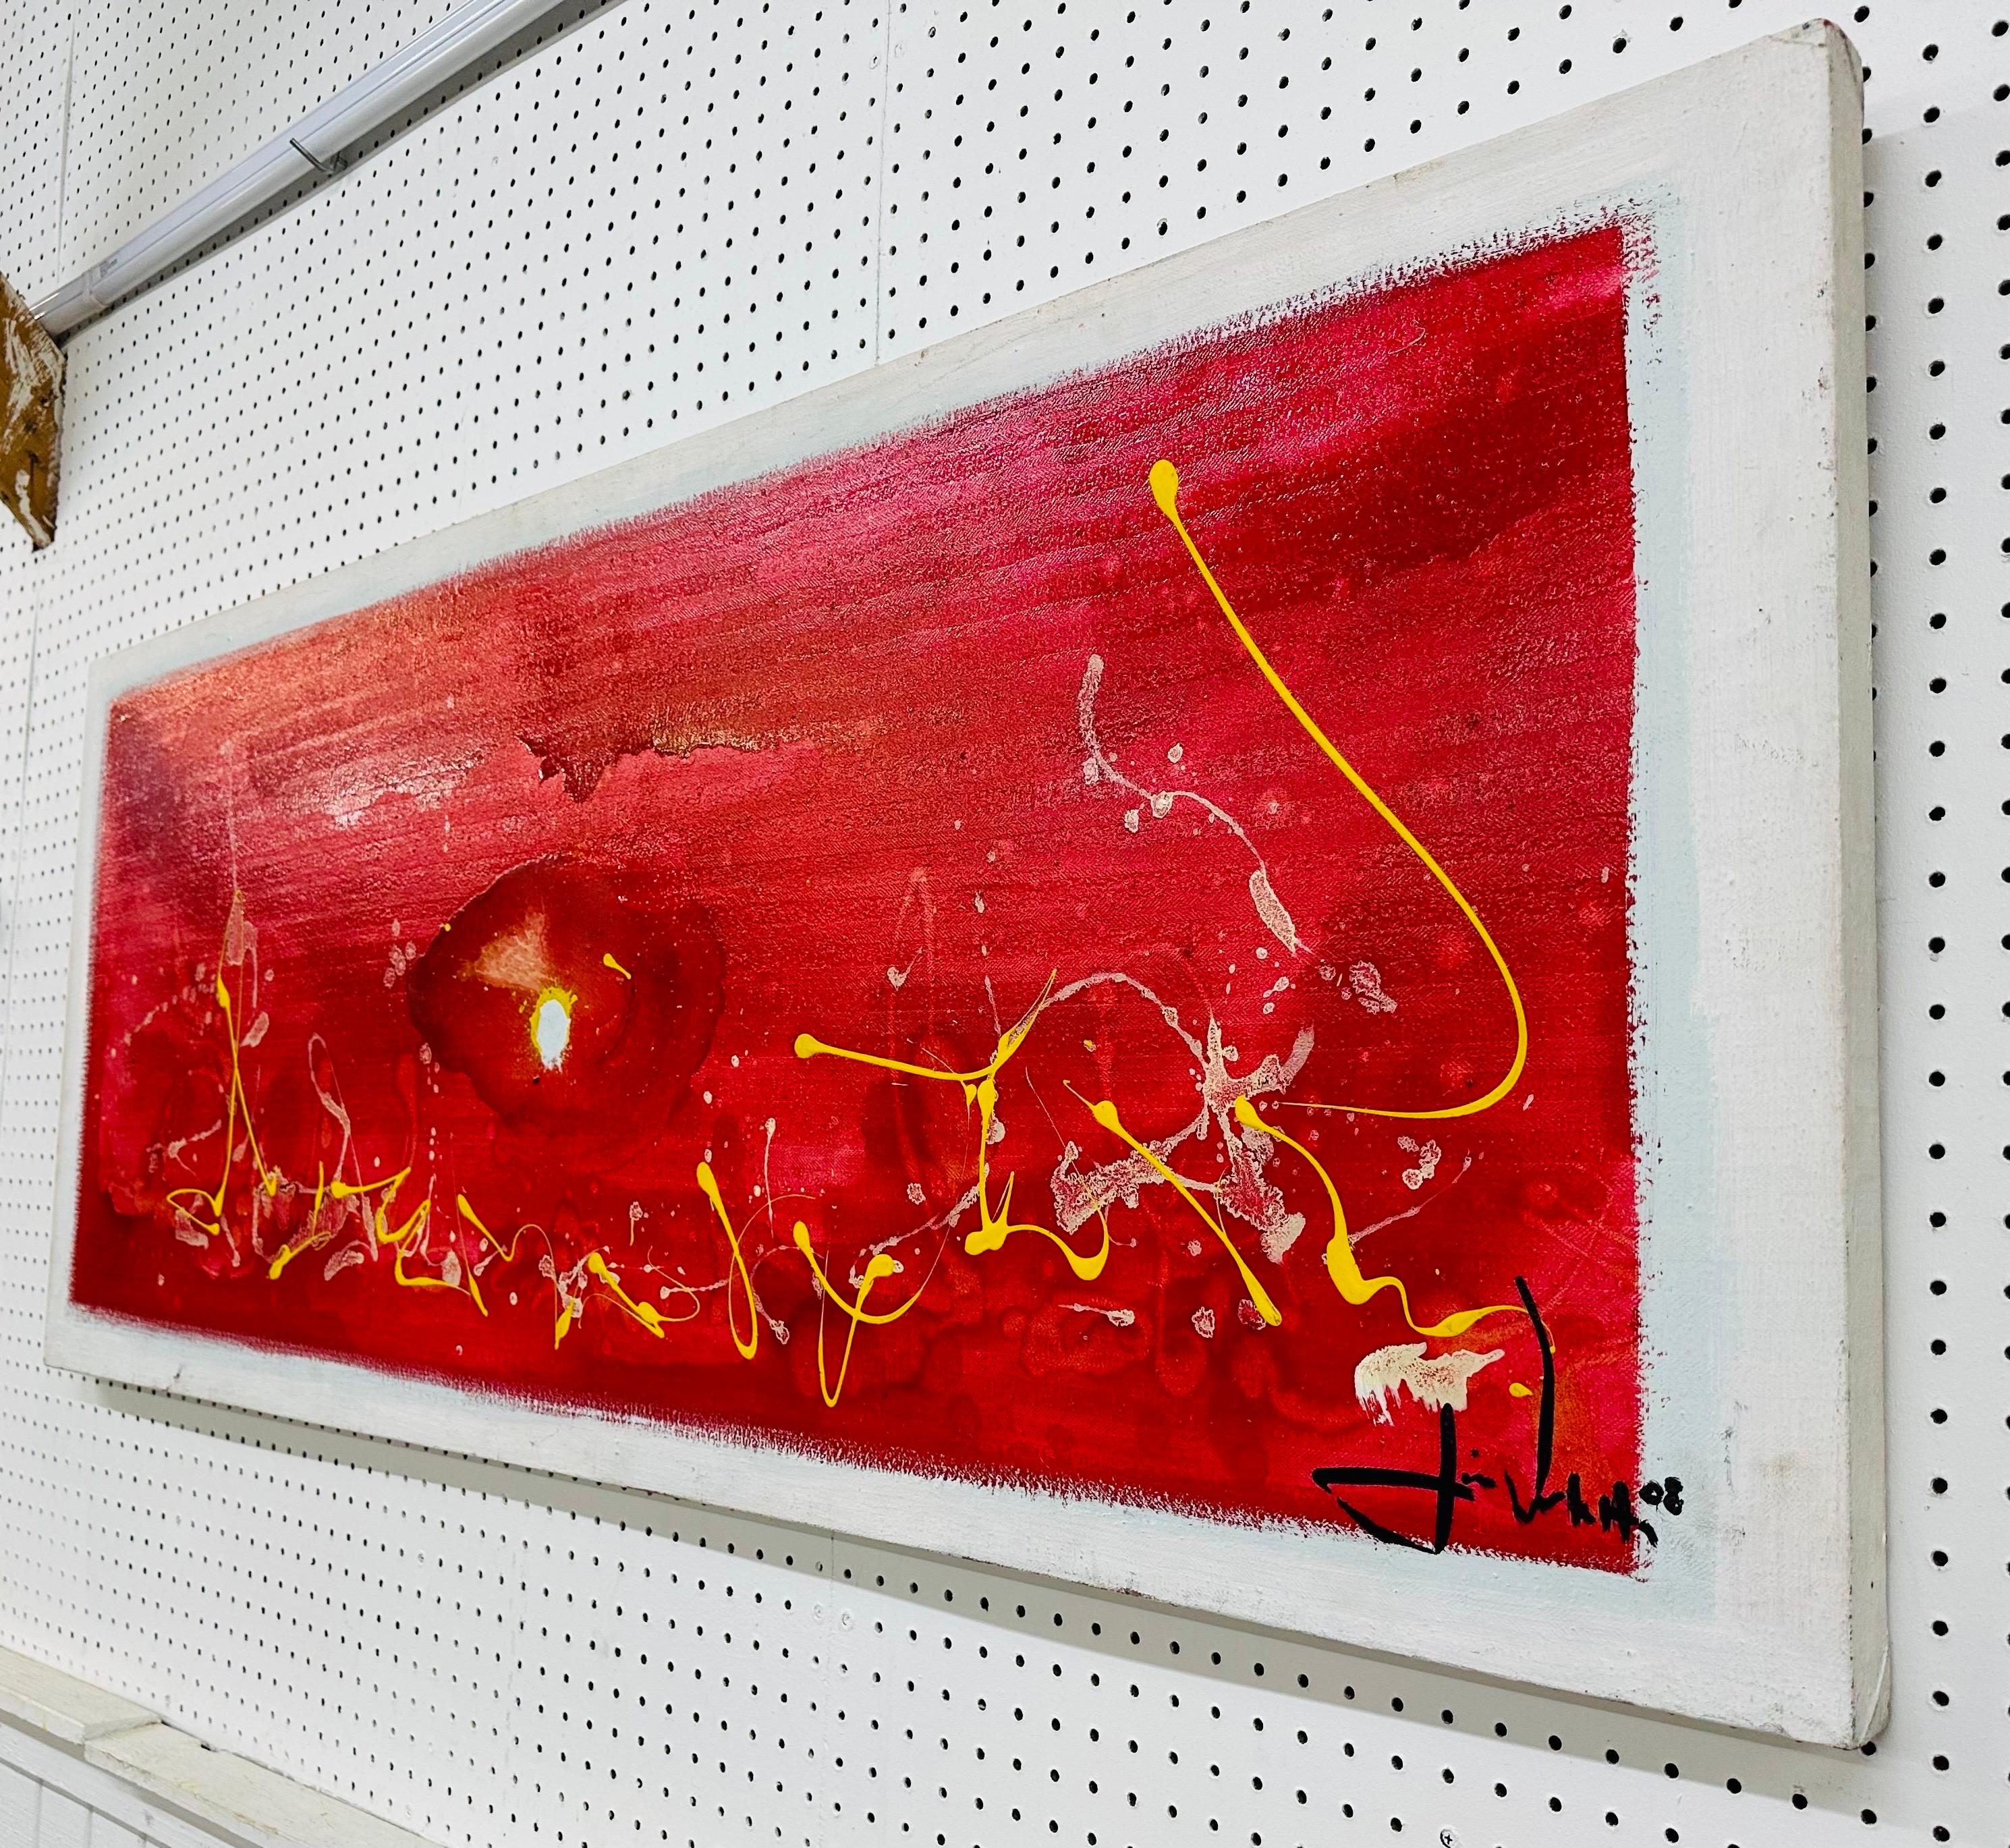 Cette annonce concerne une peinture expressionniste abstraite moderne. Whiting, toile rectangulaire, mélange de couleurs rouge, blanc et jaune, signée en bas à droite.